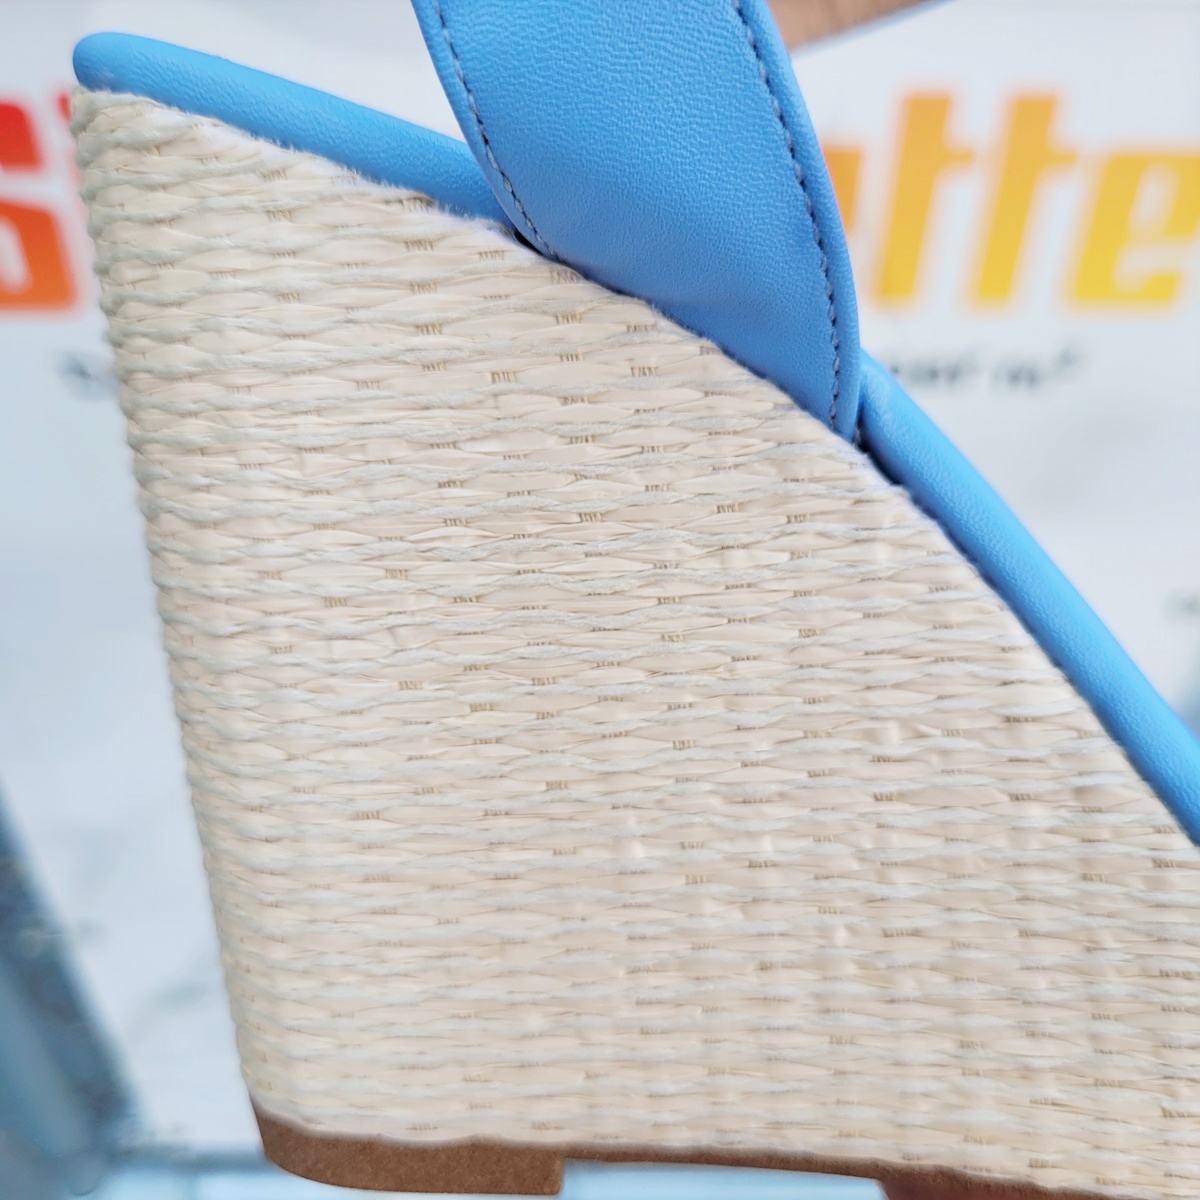 Lichtblauwe sleehakken met zacht voetbed | Blauwe sandalen met sleehak